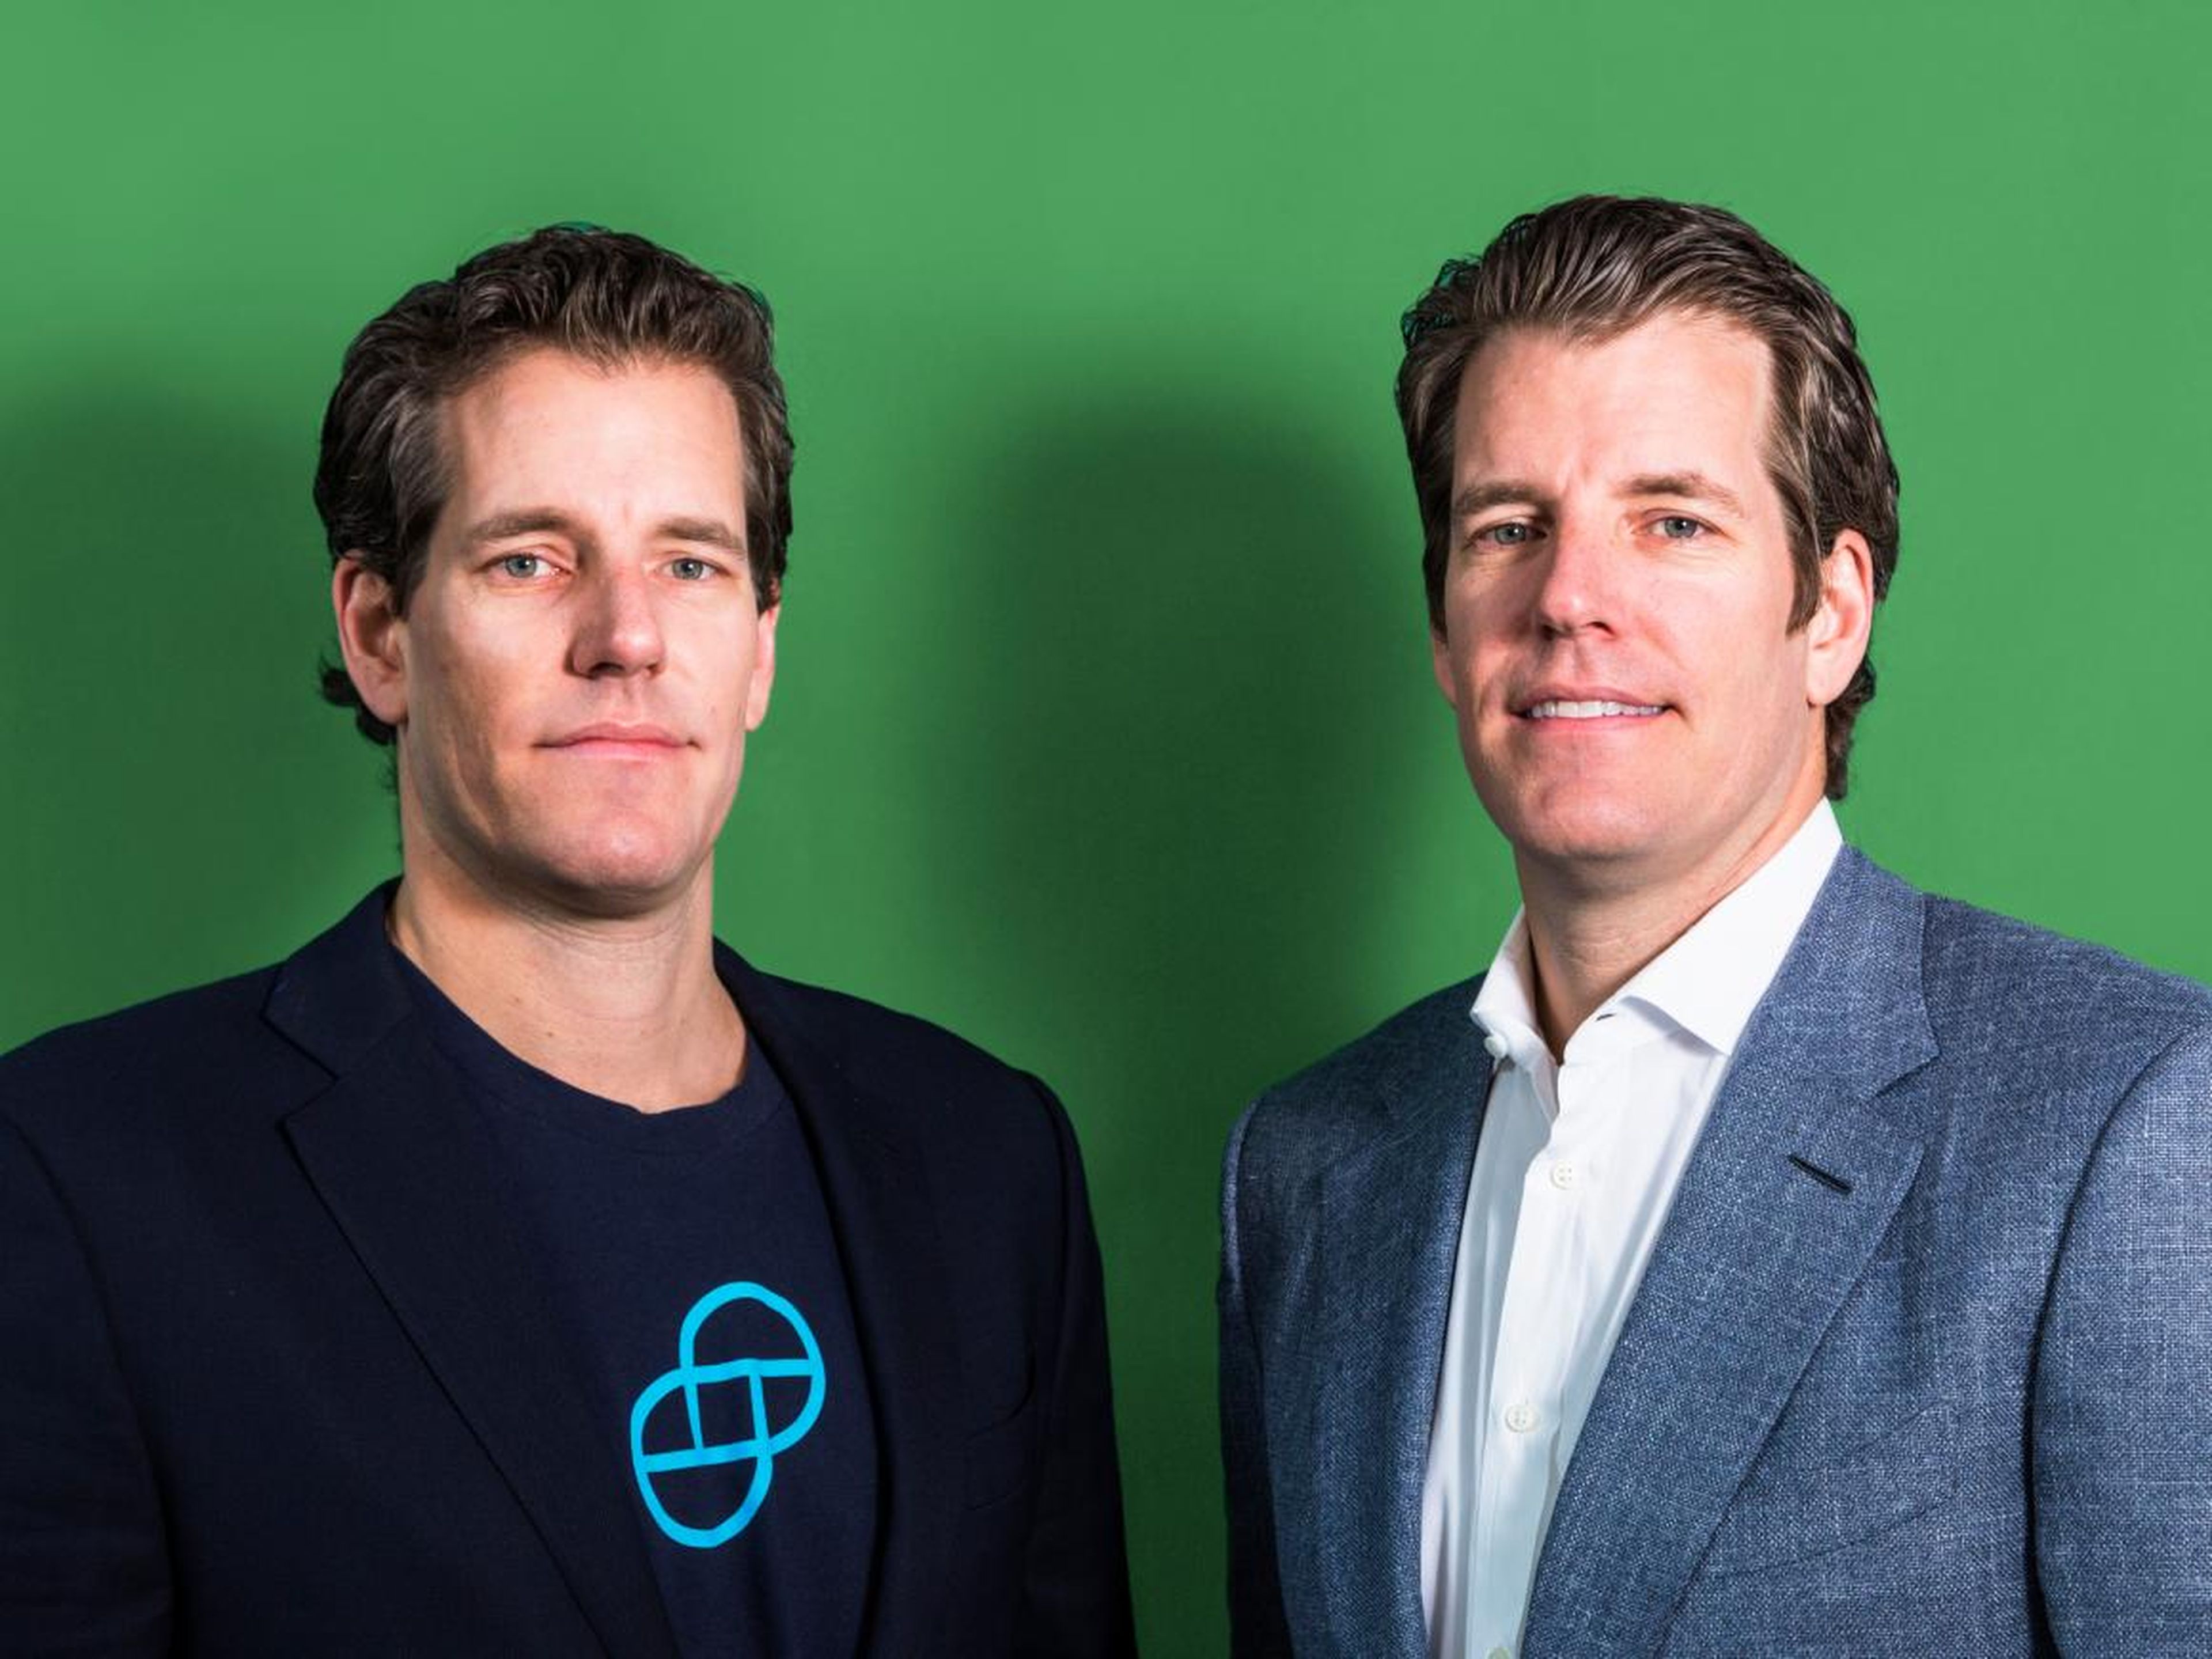 Tyler y Cameron Winklevoss, fundadores de Gemini, están aportando transparencia al mercado criptográfico